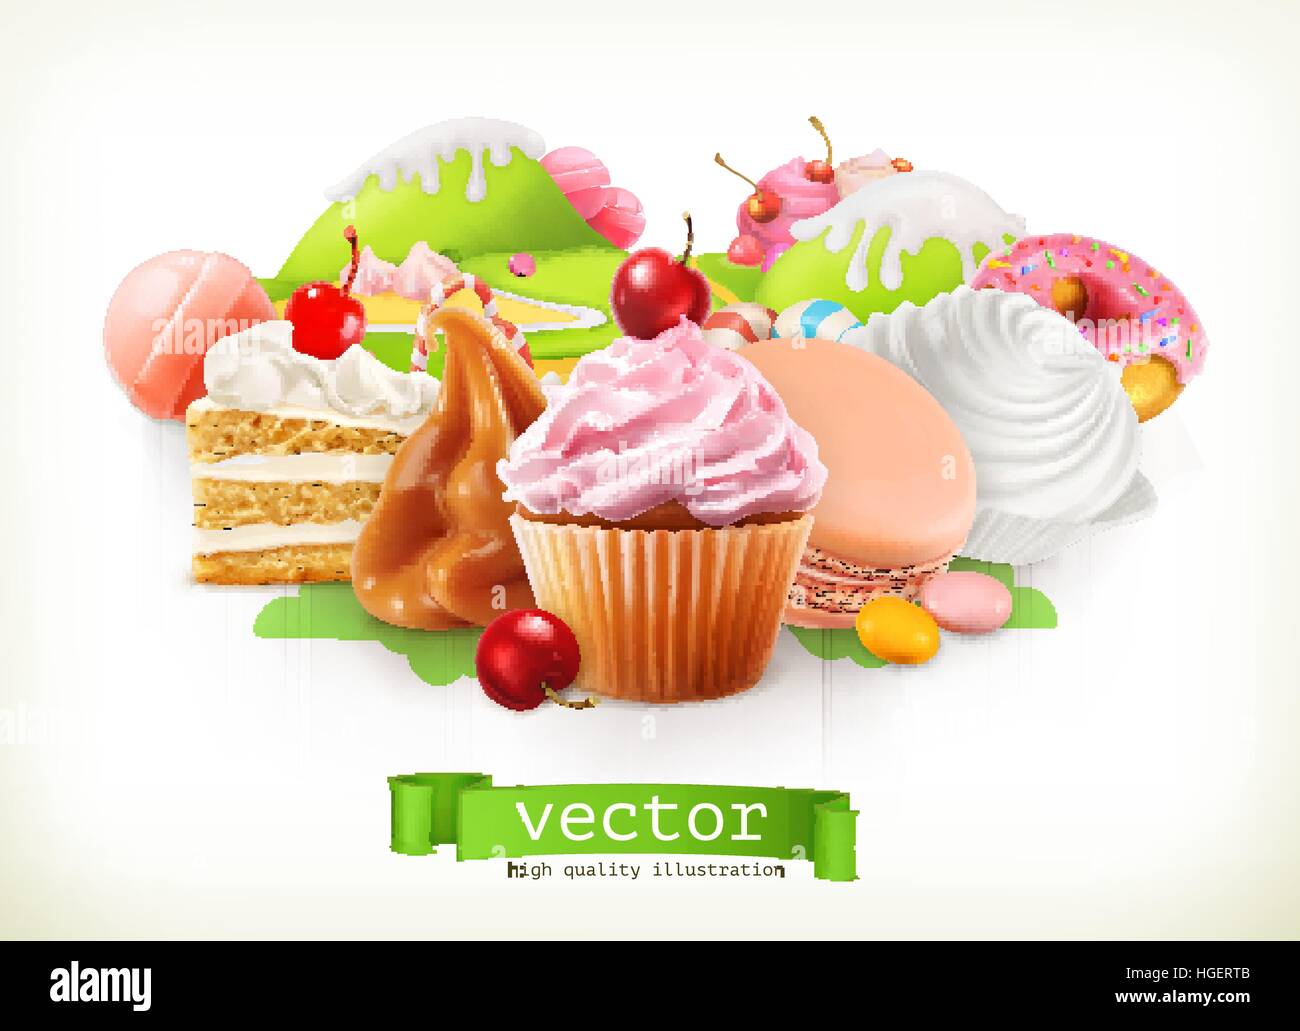 Süßwarenladen. Süßwaren und Desserts, Kuchen, Kuchen, Süßigkeiten, Karamell. 3D Vektor-illustration Stock Vektor